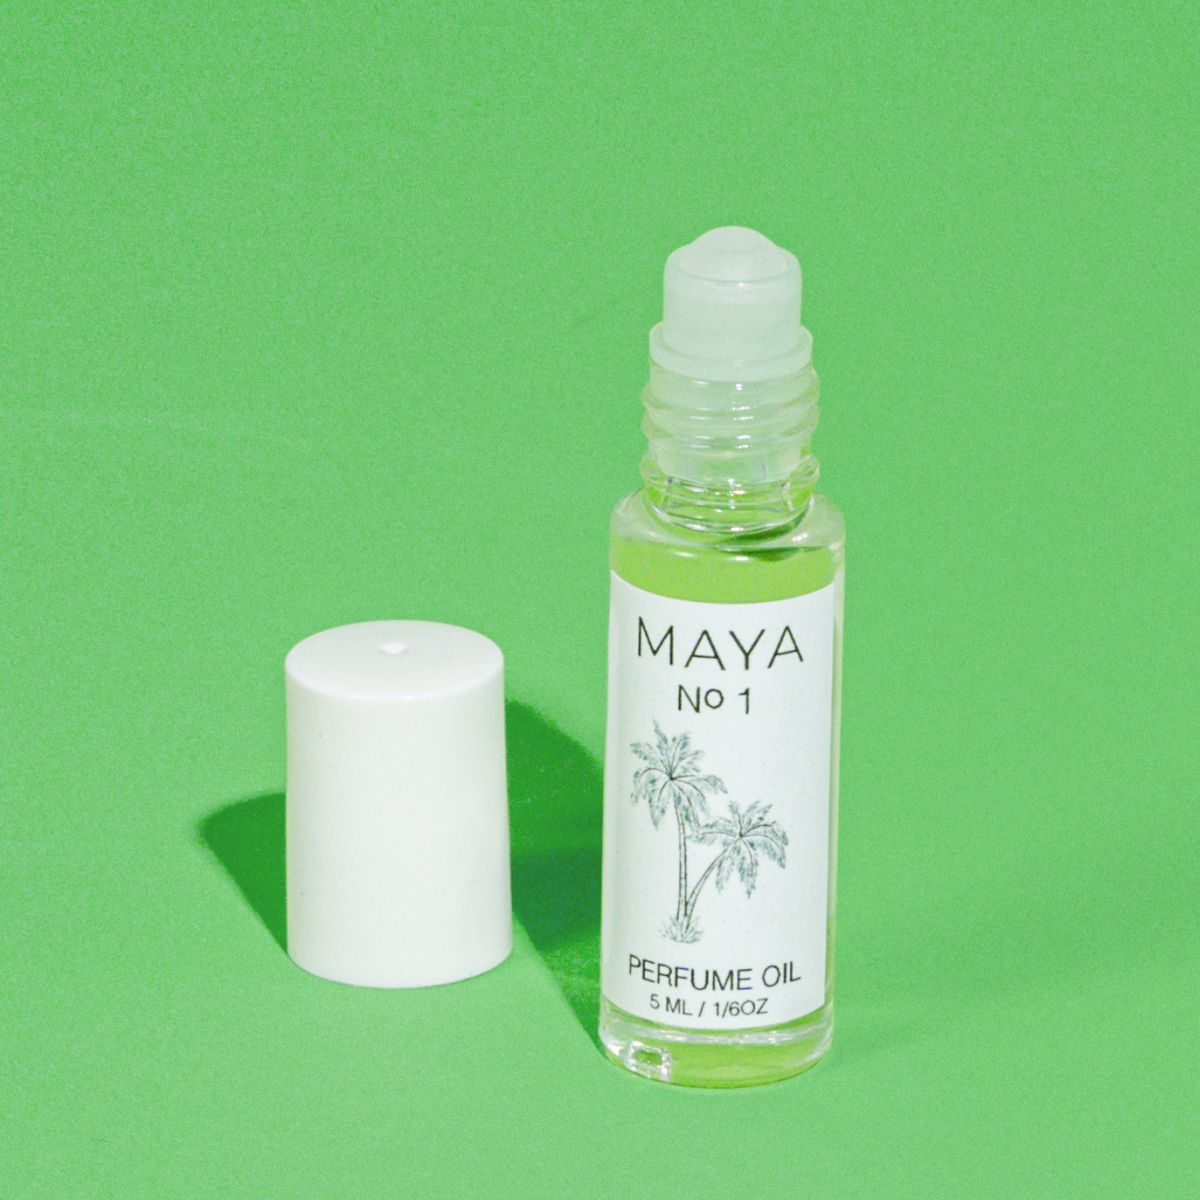 Staycation Box - Maya Fragrances No. 1 Perfume Oil 5ml.jpg